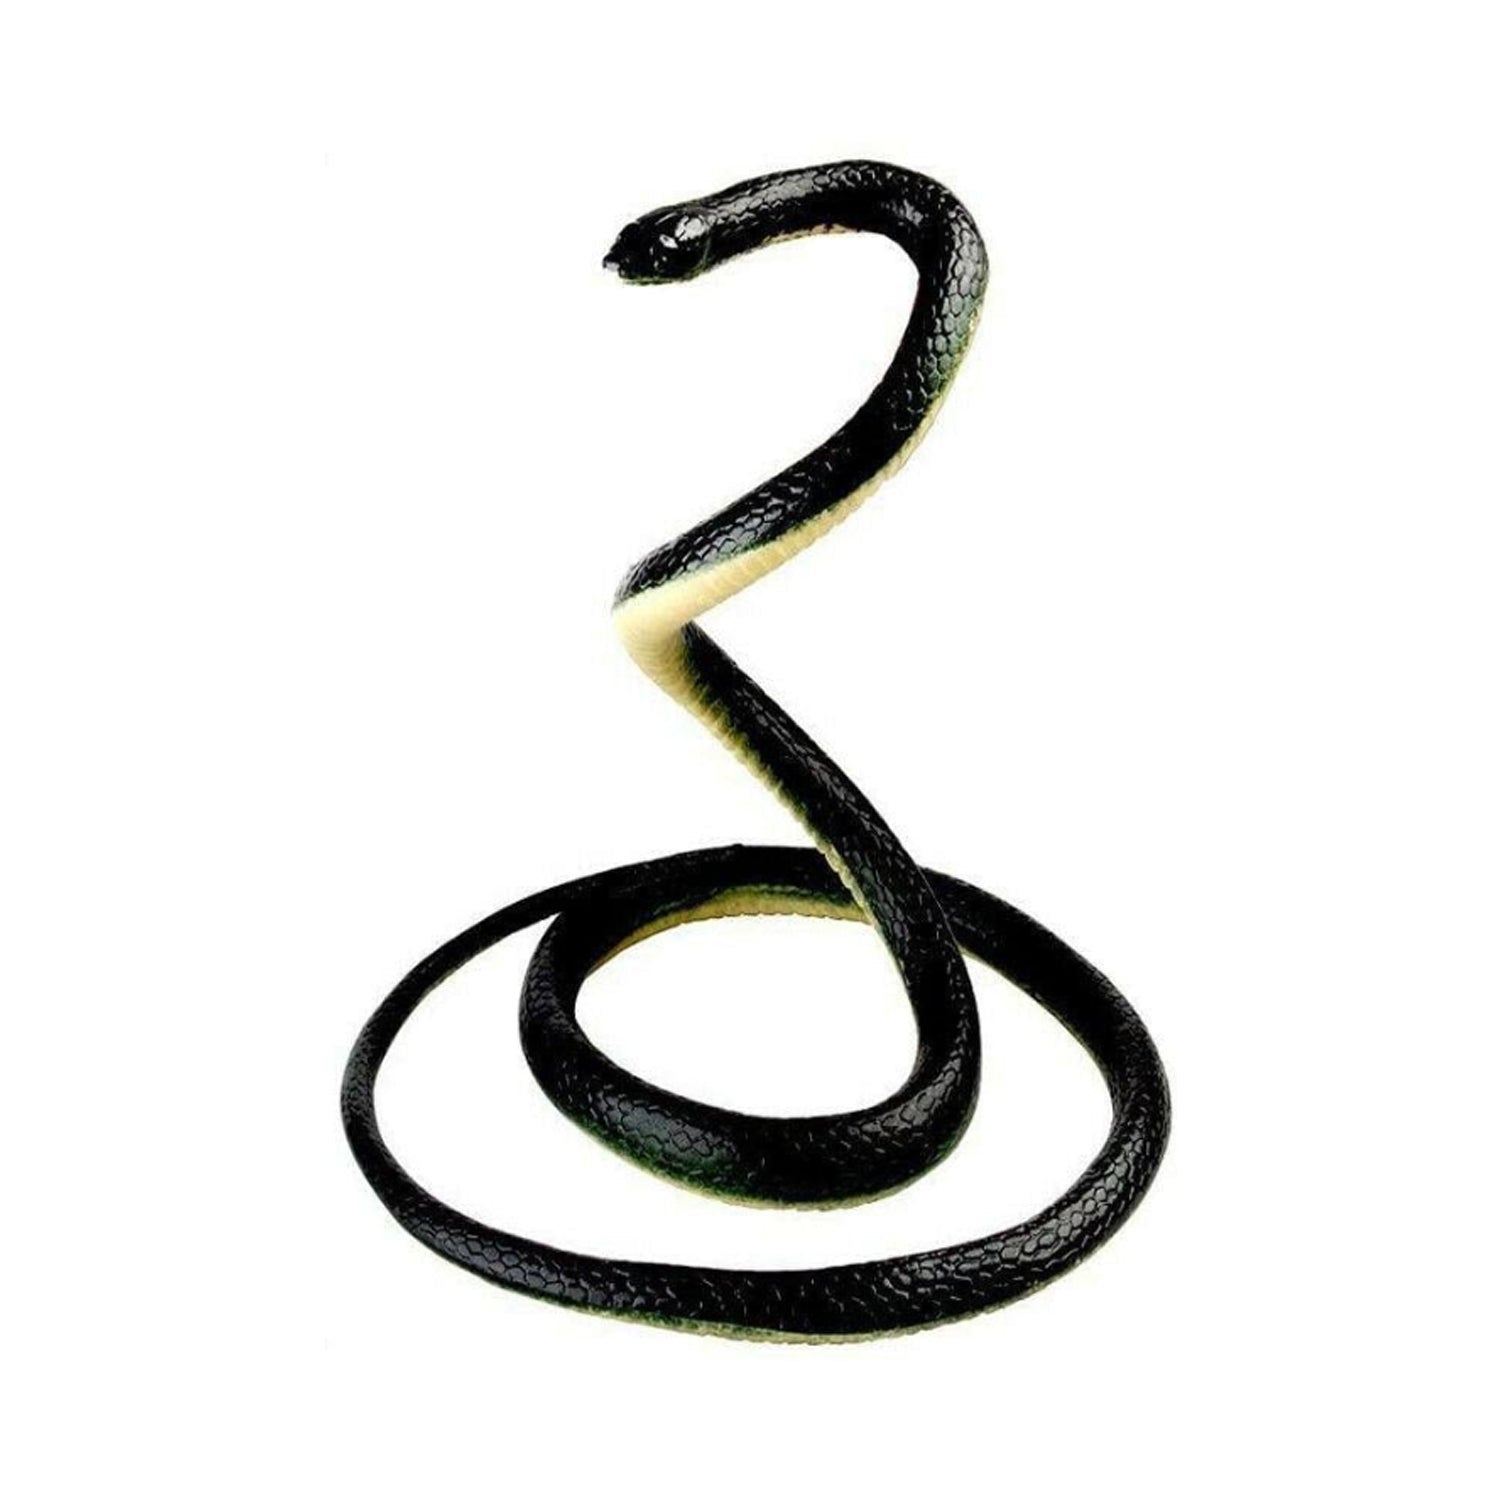 Trick Fake Rubber Snake - 1.3 Meter